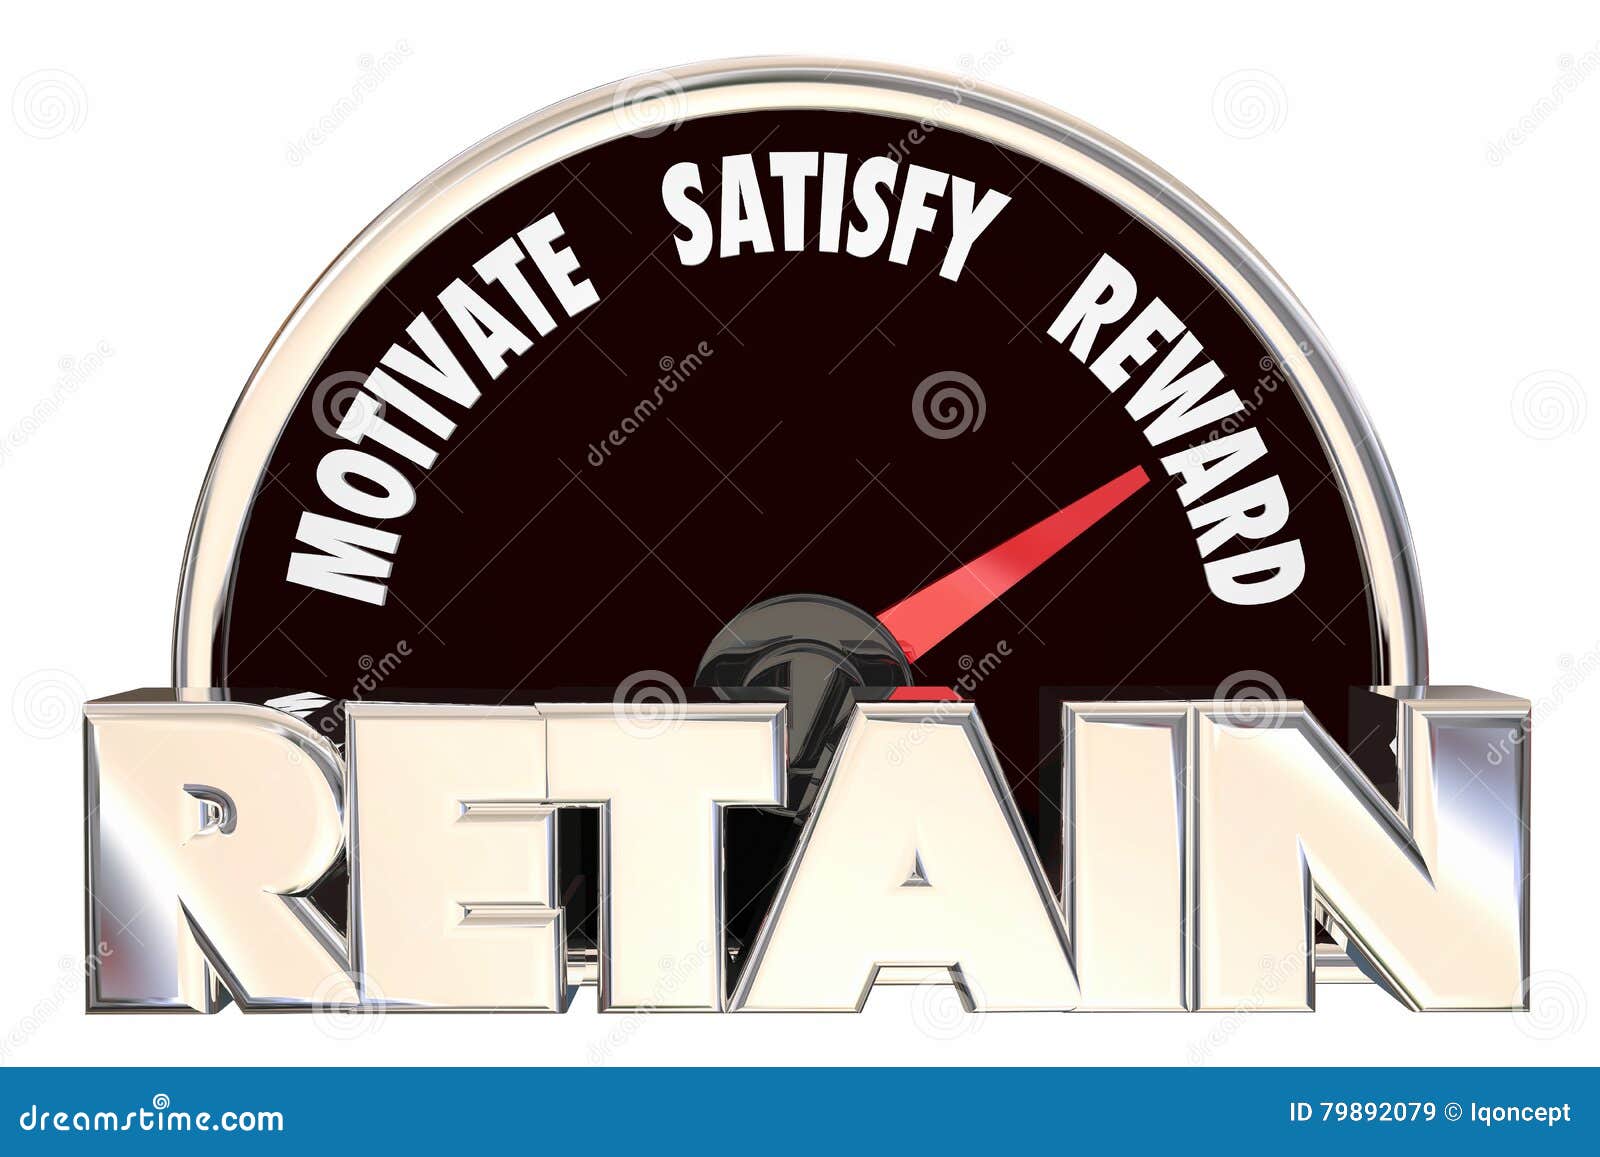 retain customers employees retention speedometer